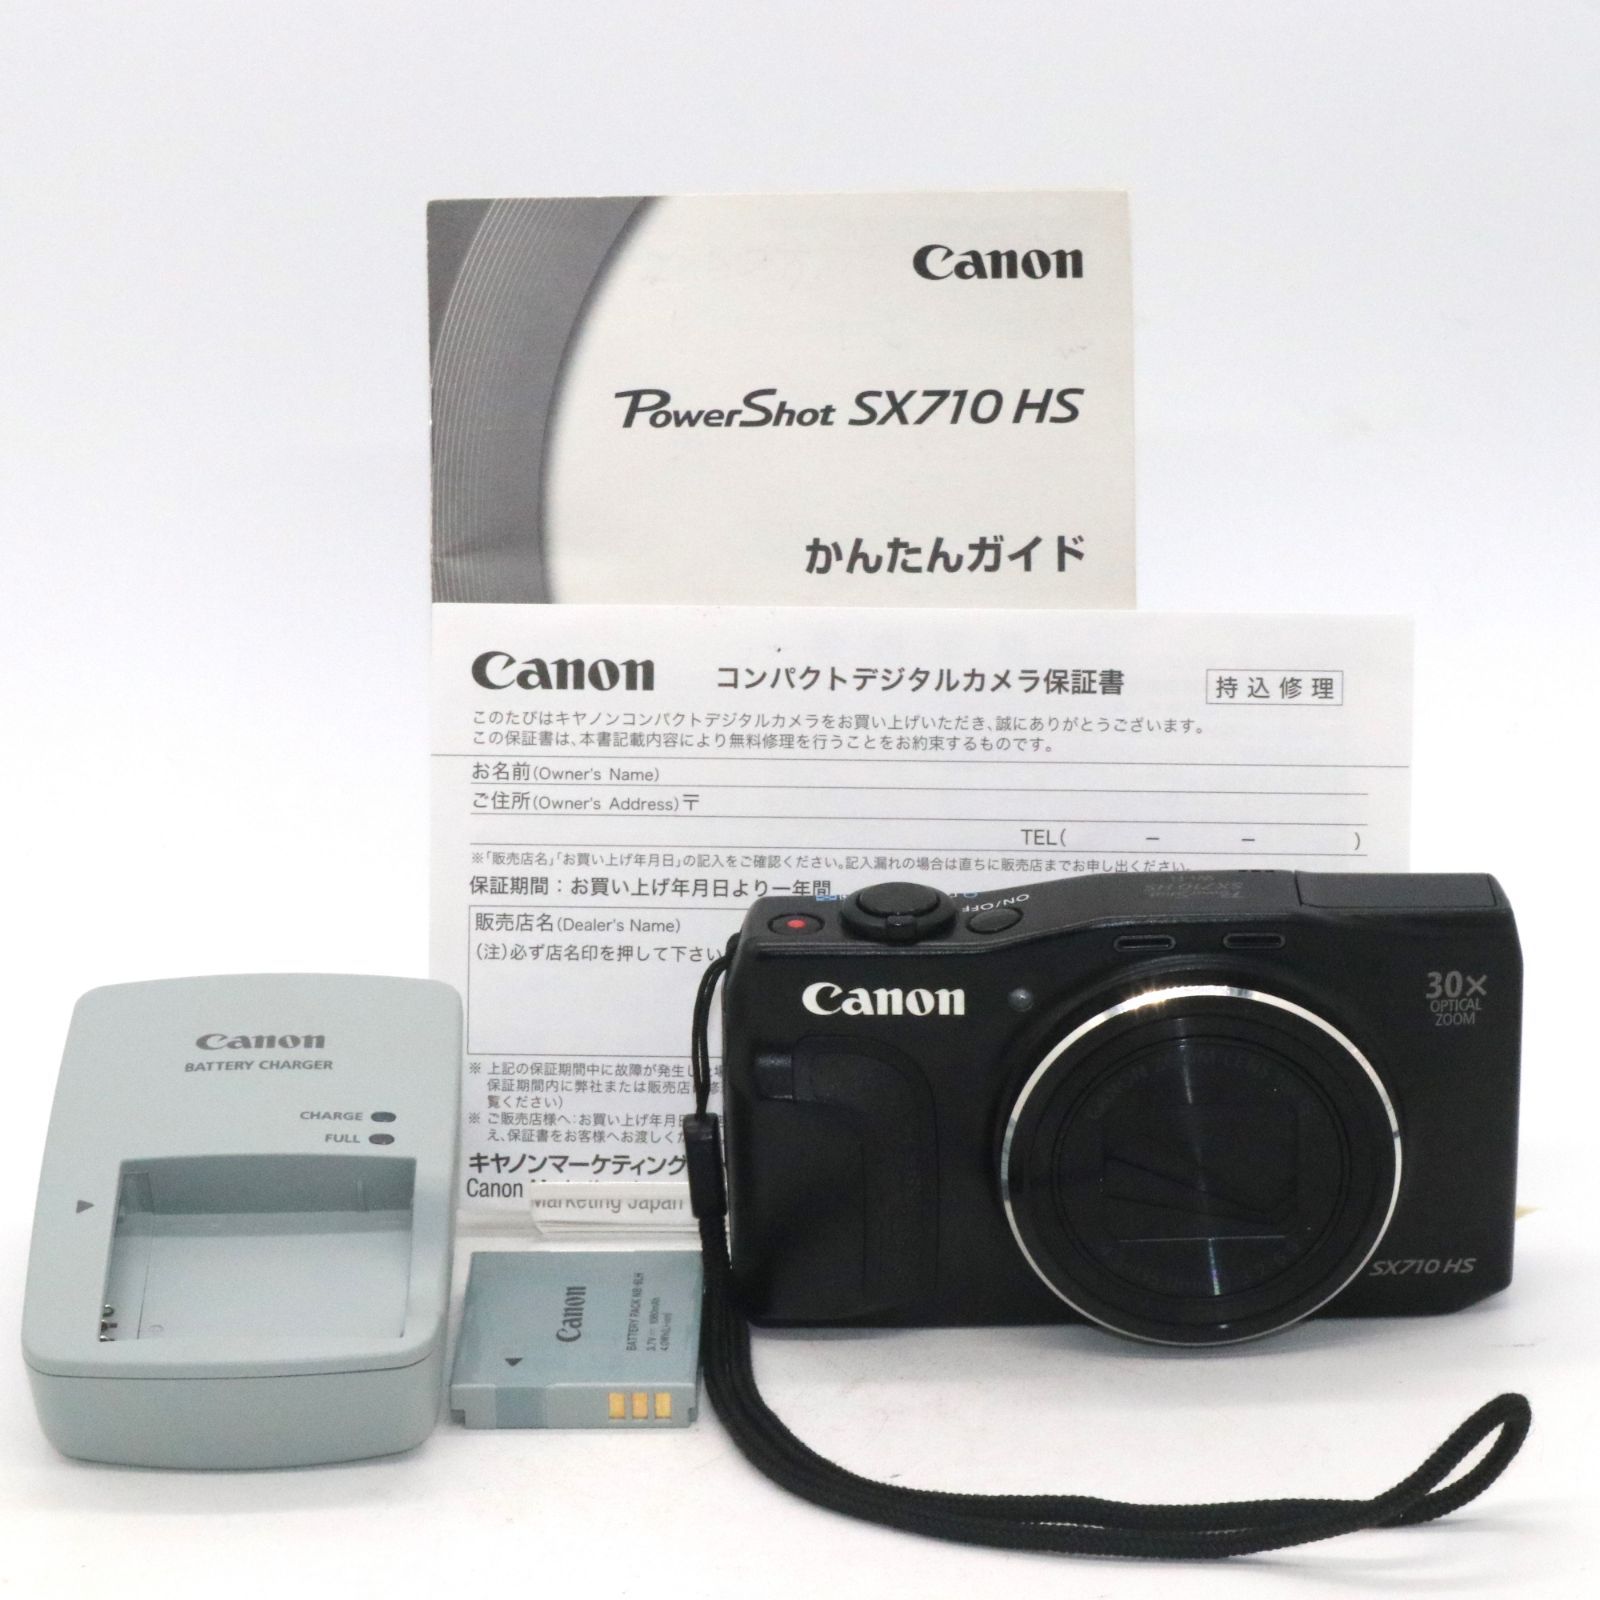 並品 Canon デジタルカメラ PowerShot SX710 HS ブラック 光学30倍